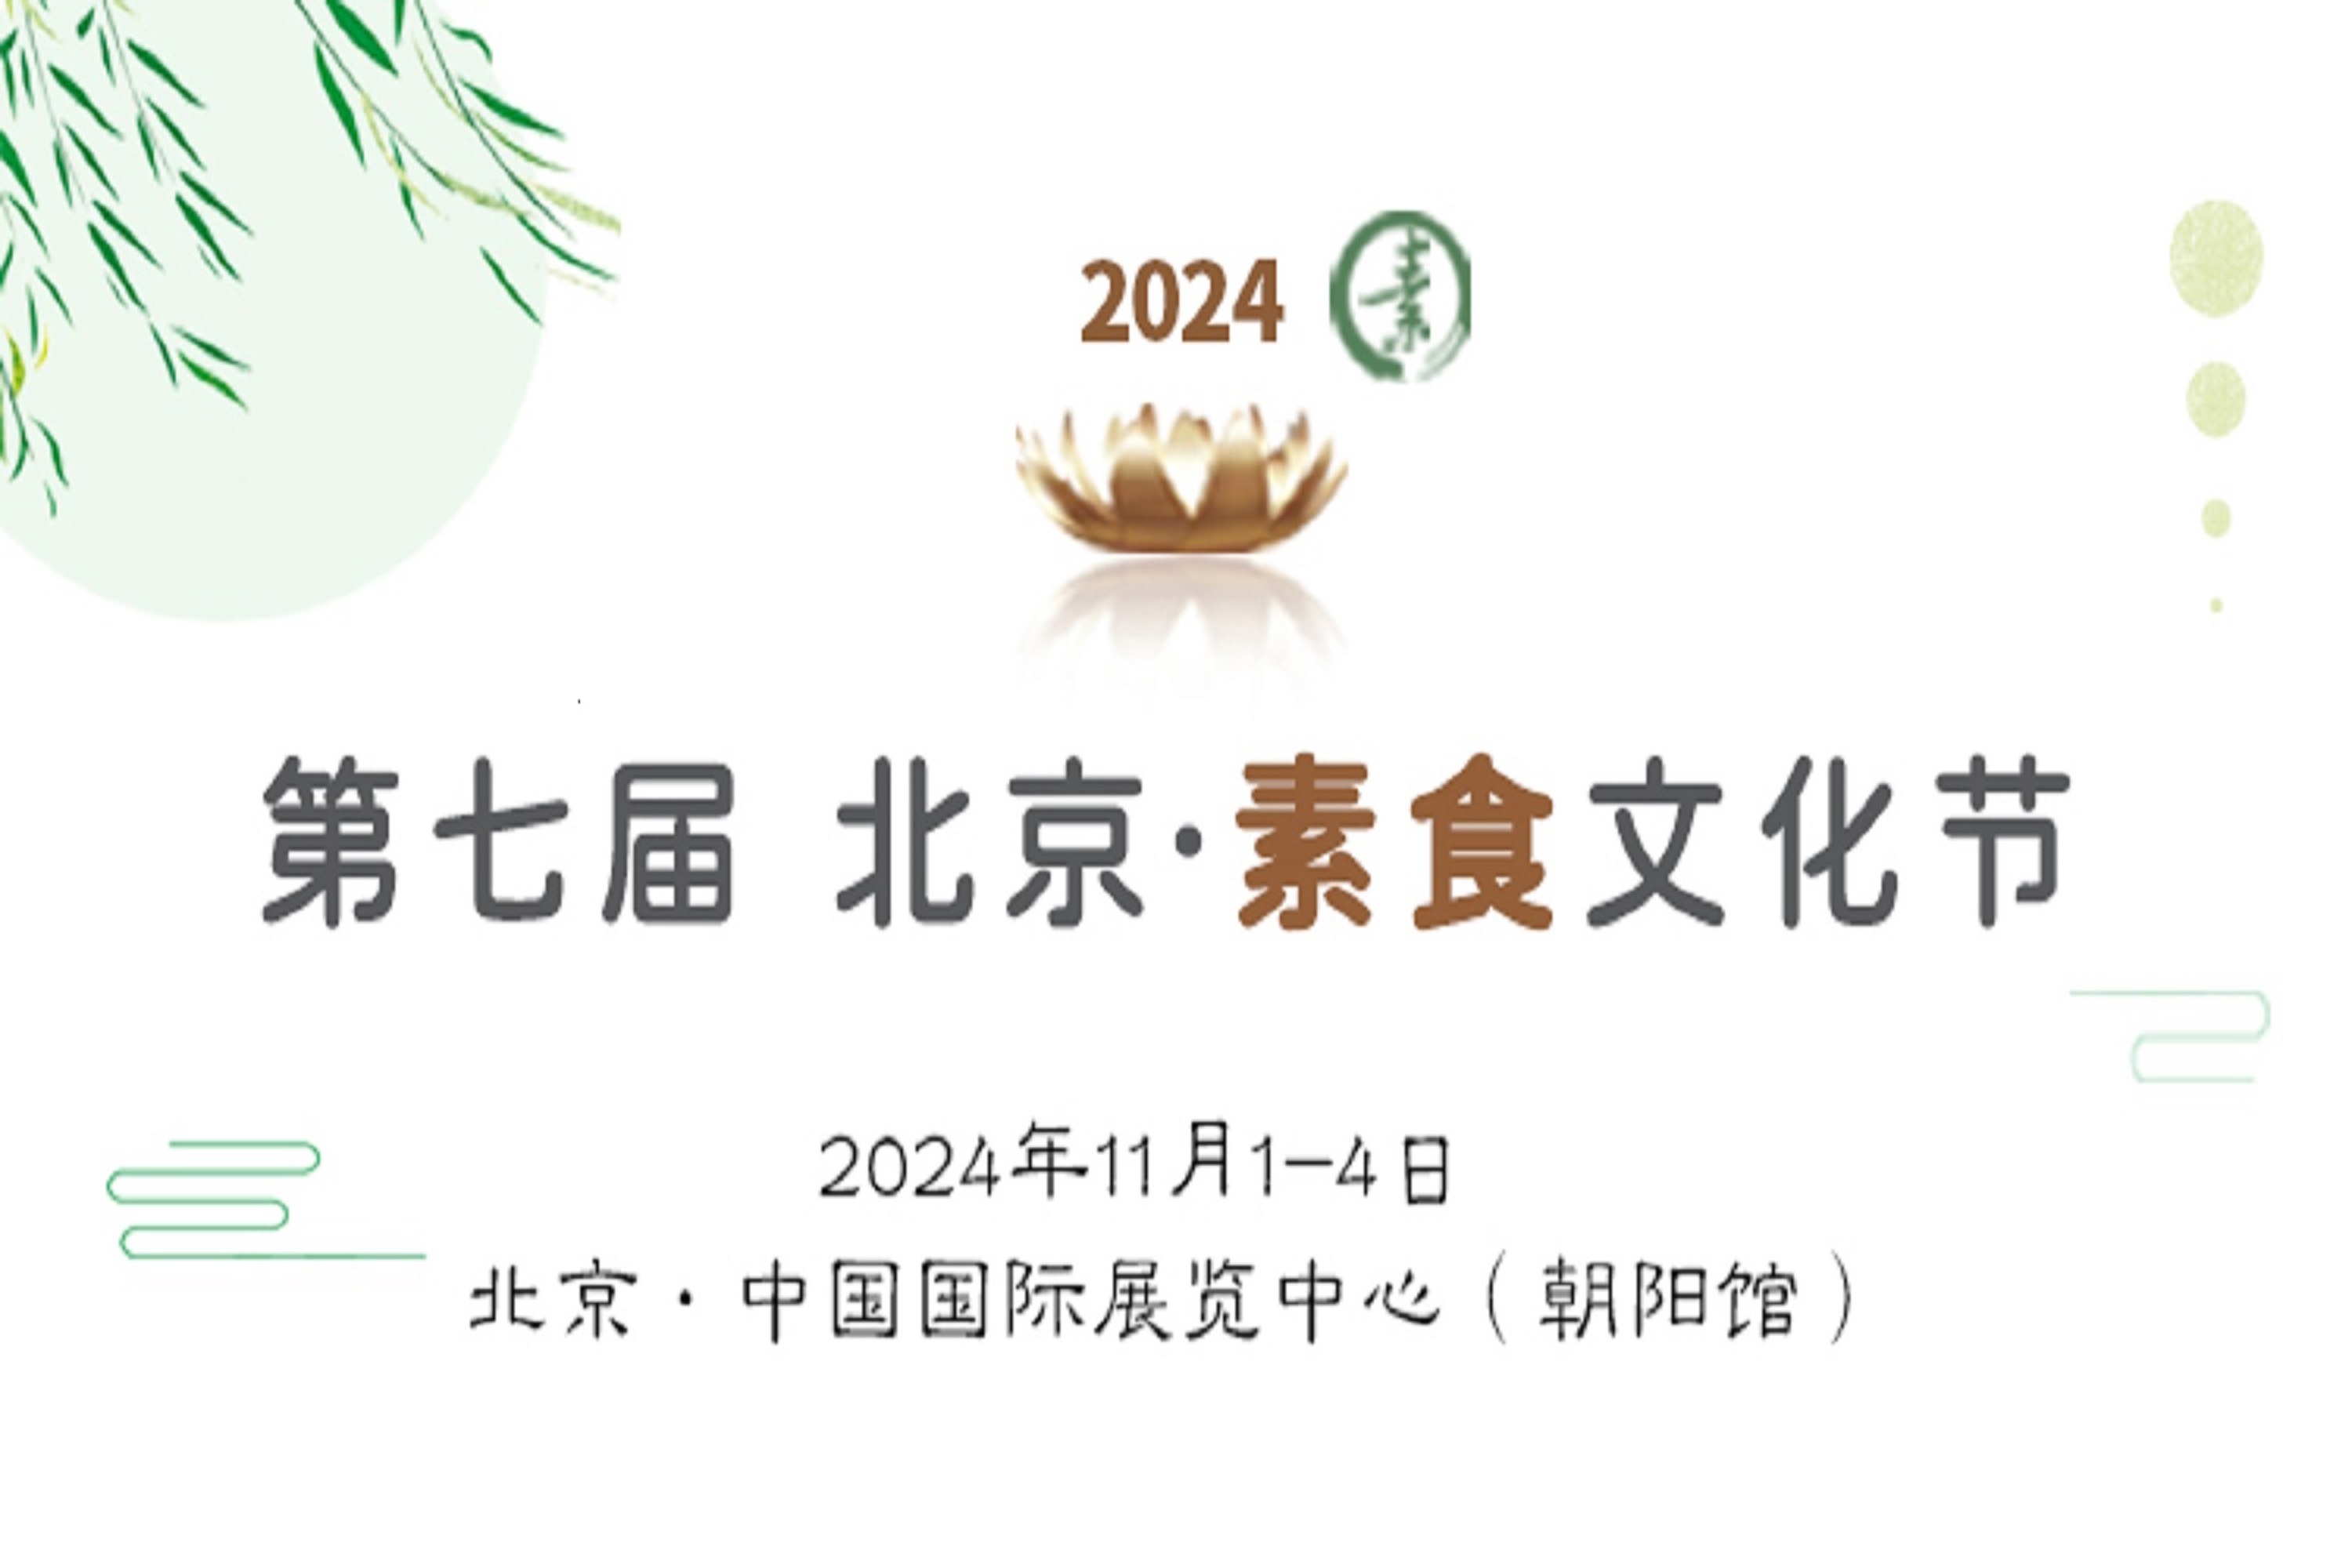 2024第七届北京素食文化节